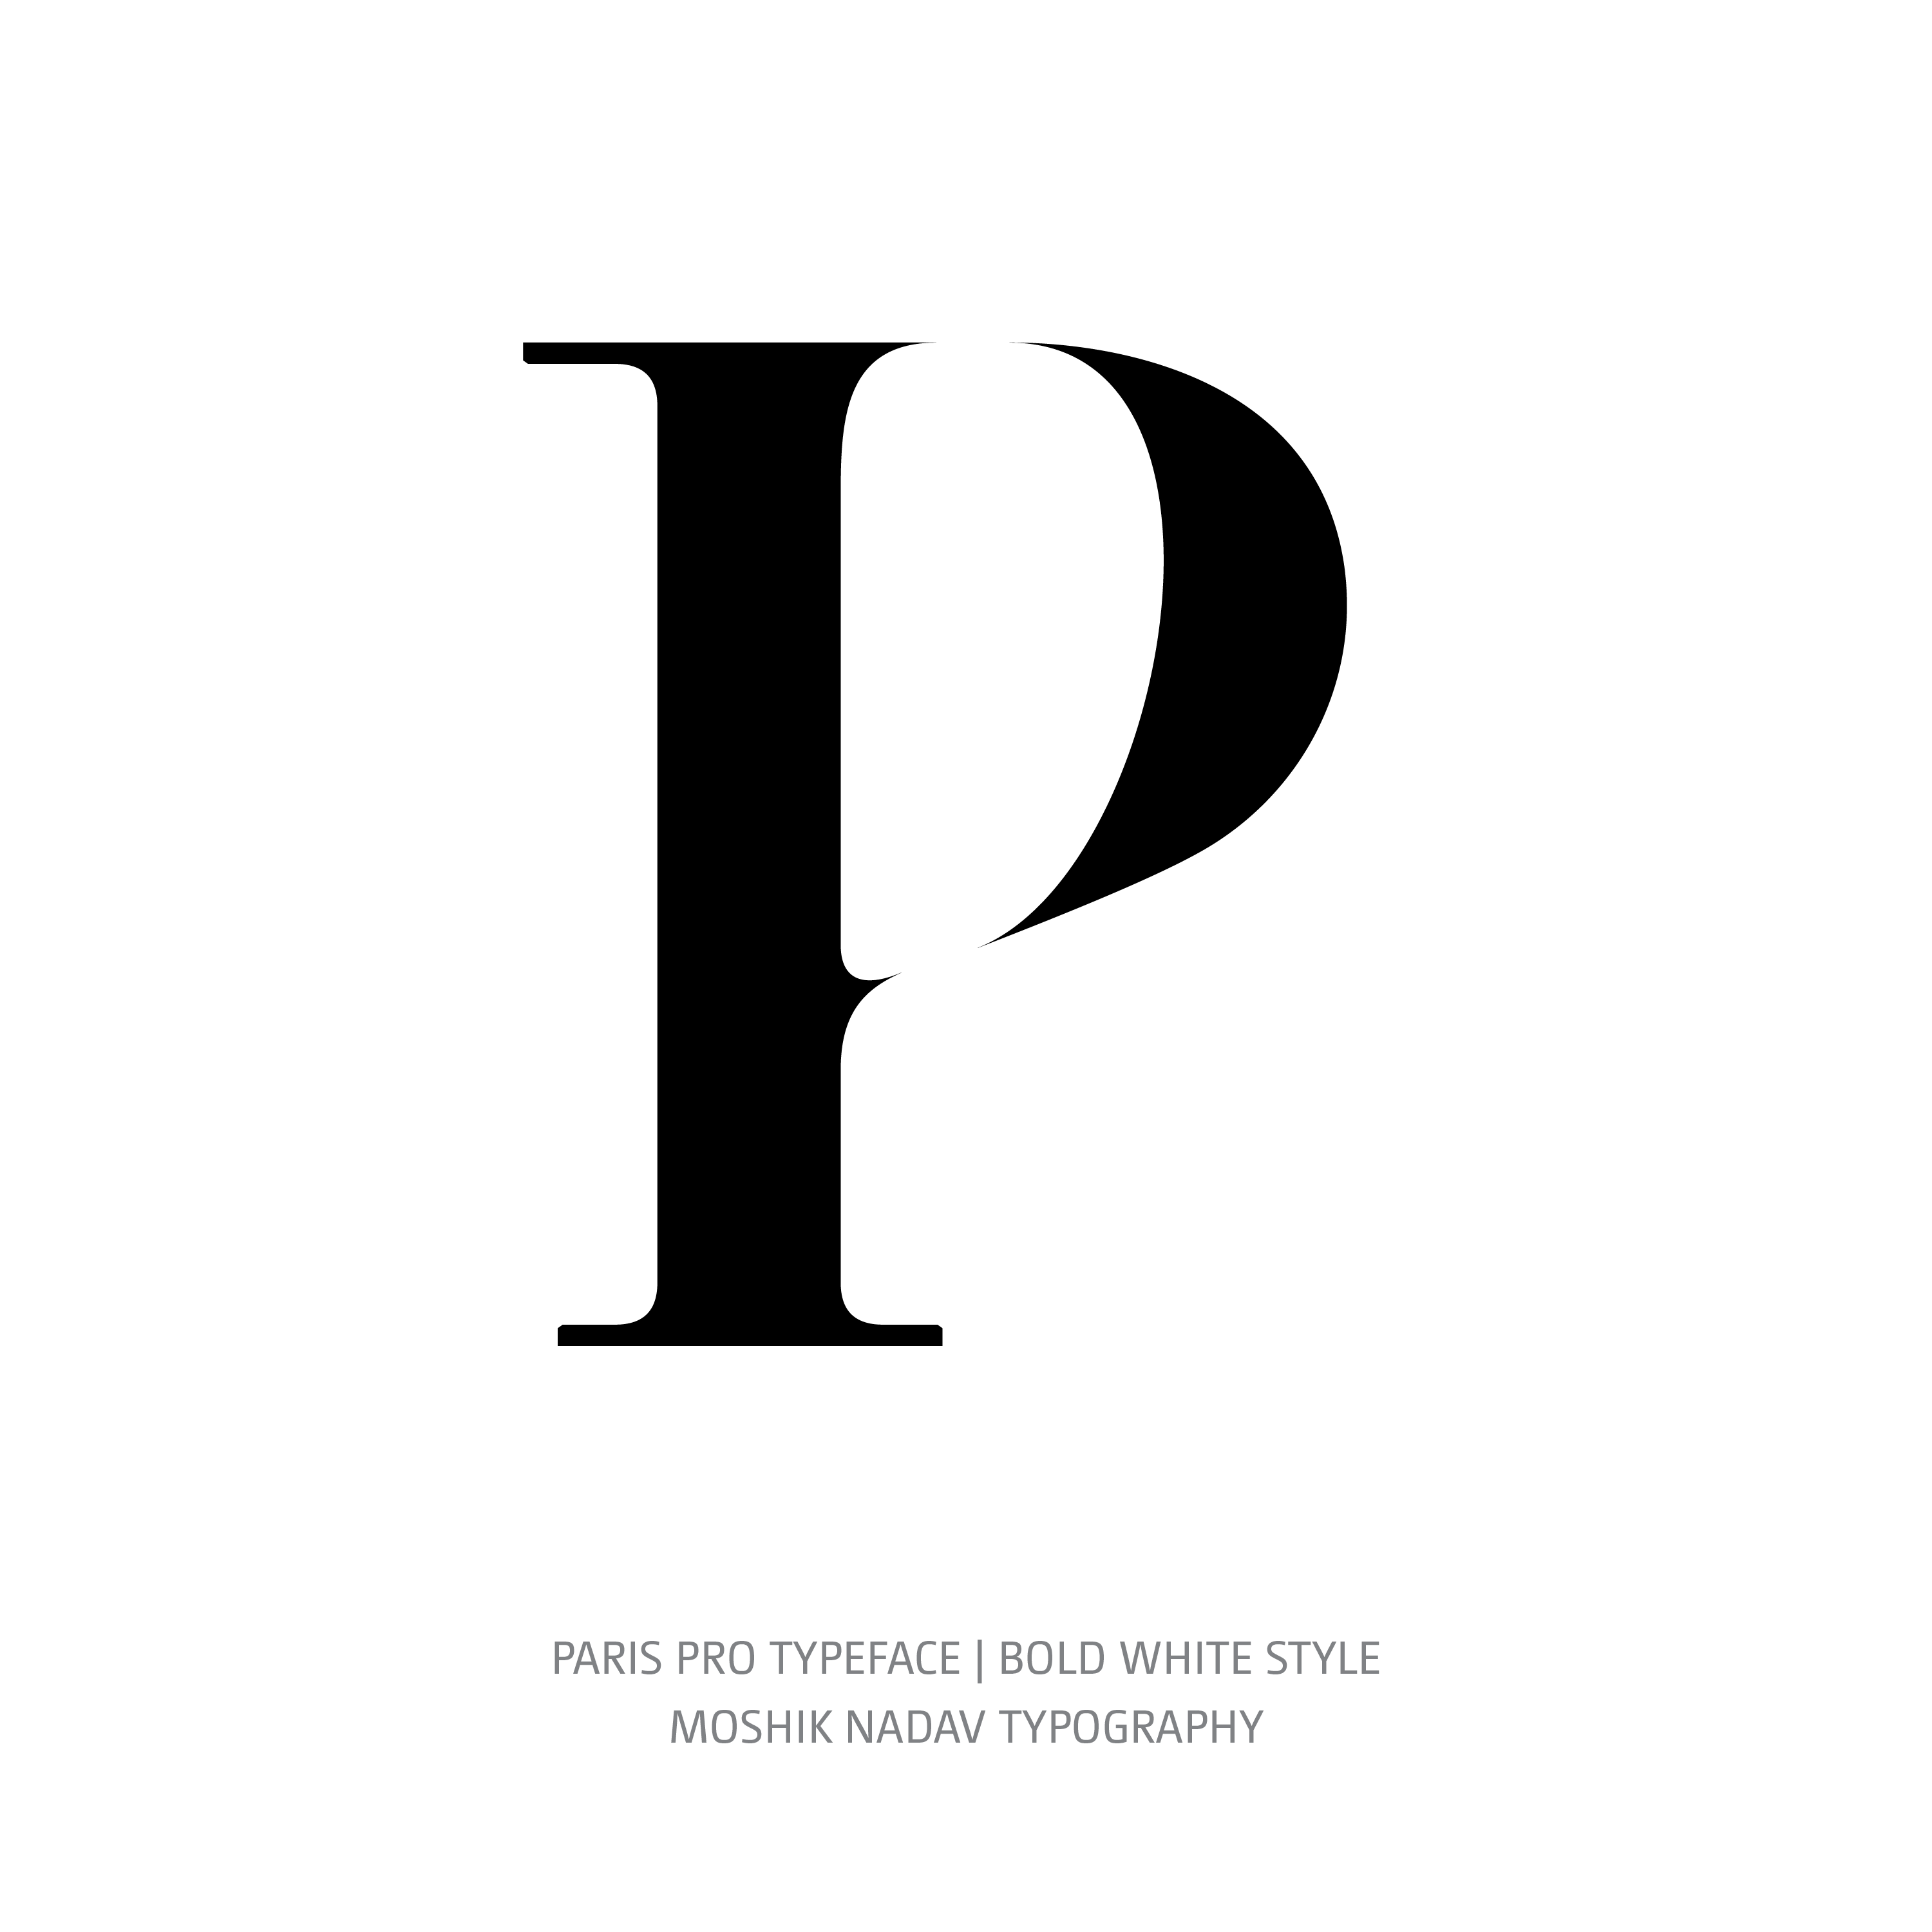 Paris Pro Typeface Bold White P